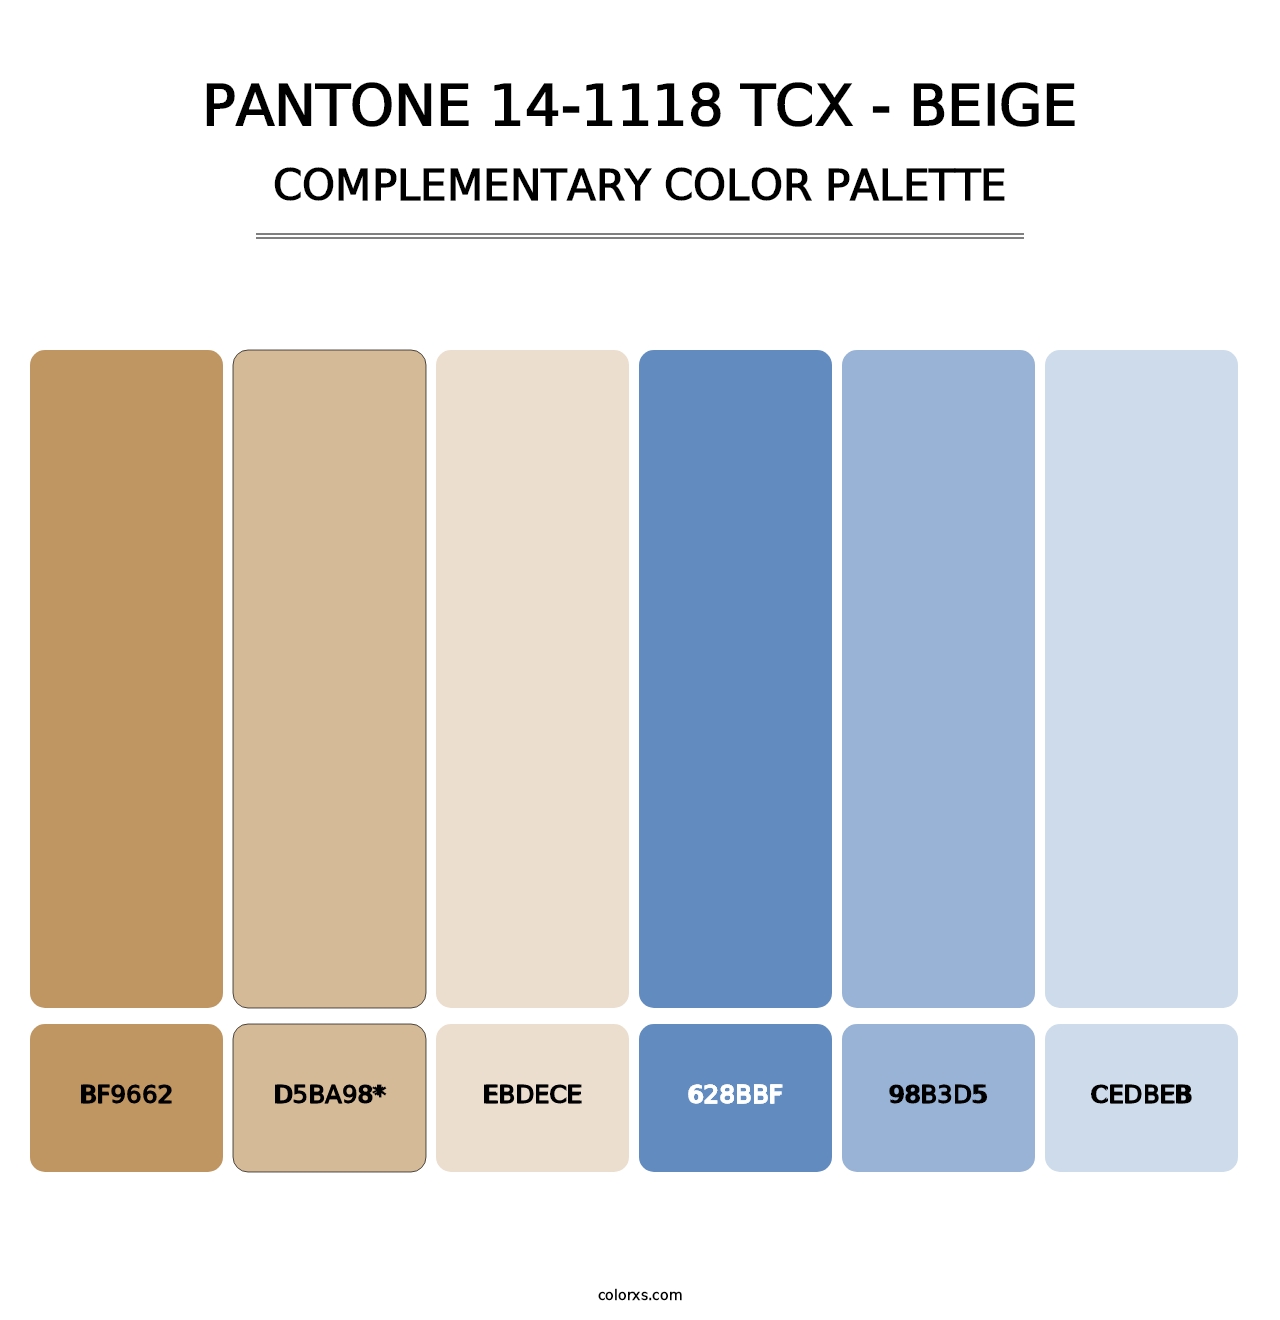 PANTONE 14-1118 TCX - Beige - Complementary Color Palette